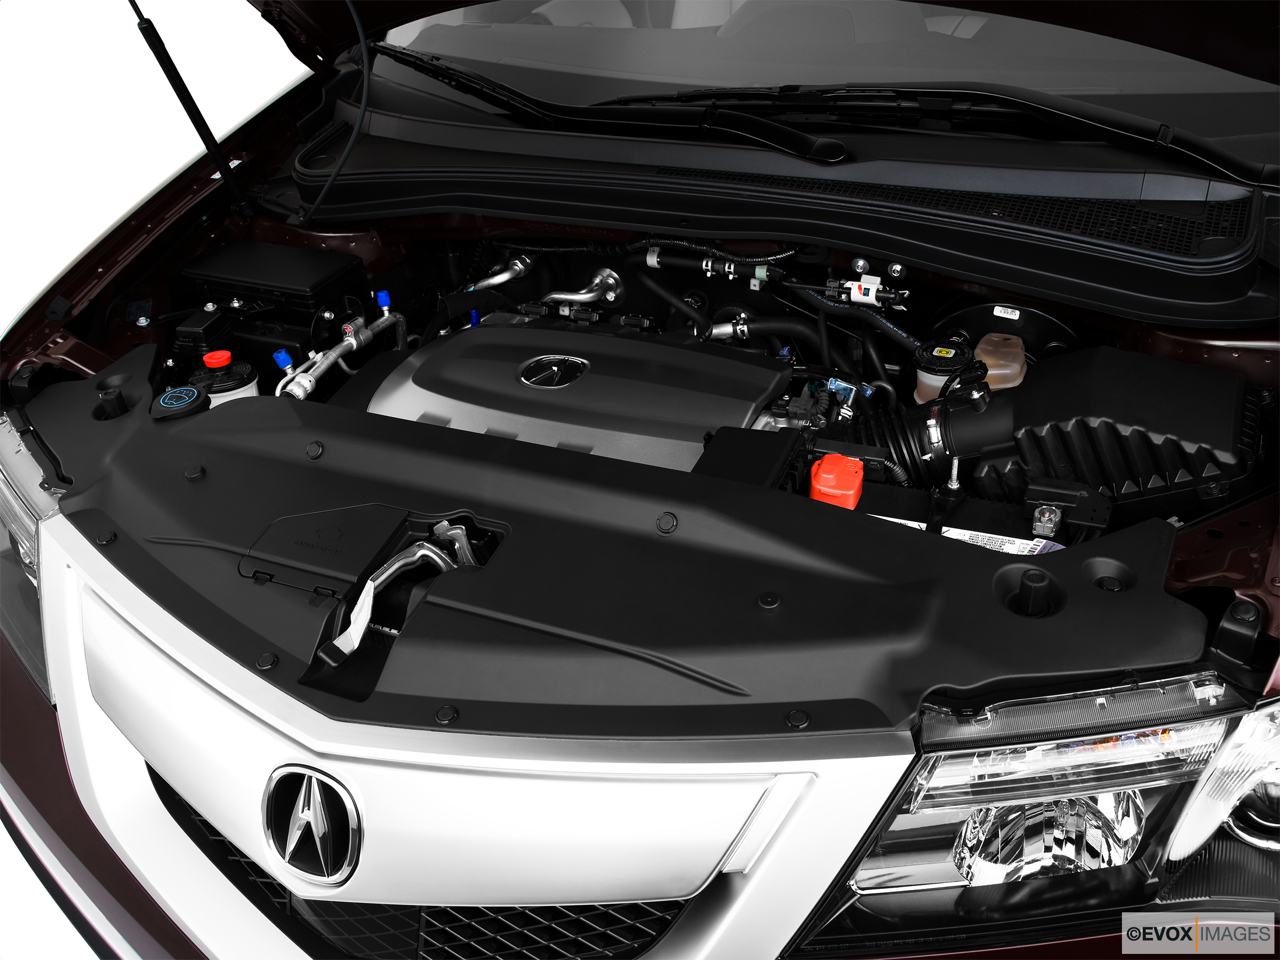 2010 Acura MDX MDX Engine. 